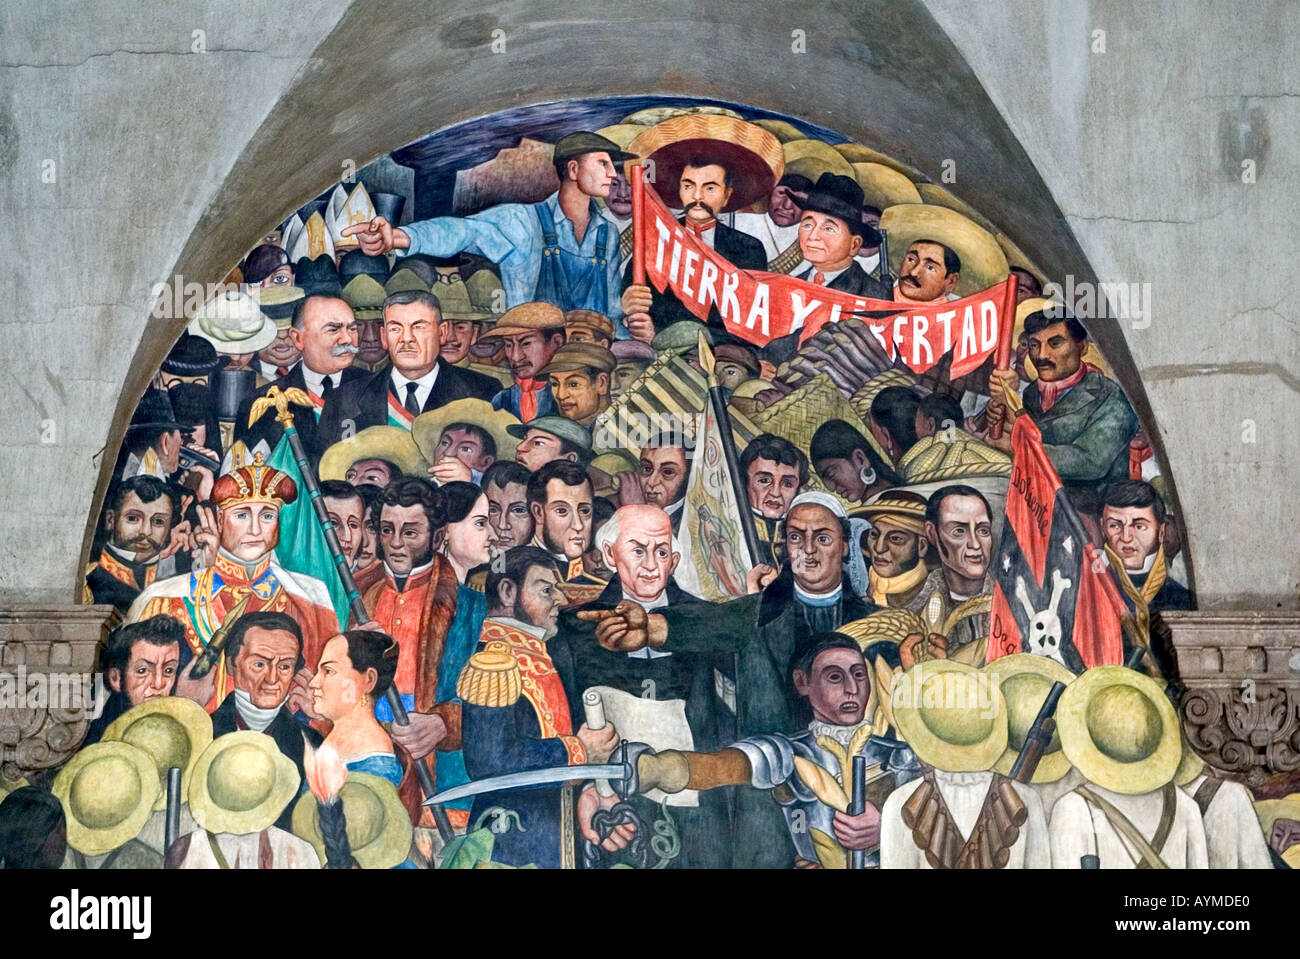 El artista mexicano Diego Rivera mural de la historia mexicana en el Palacio Nacional el Palacio Nacional, Ciudad de México Foto de stock